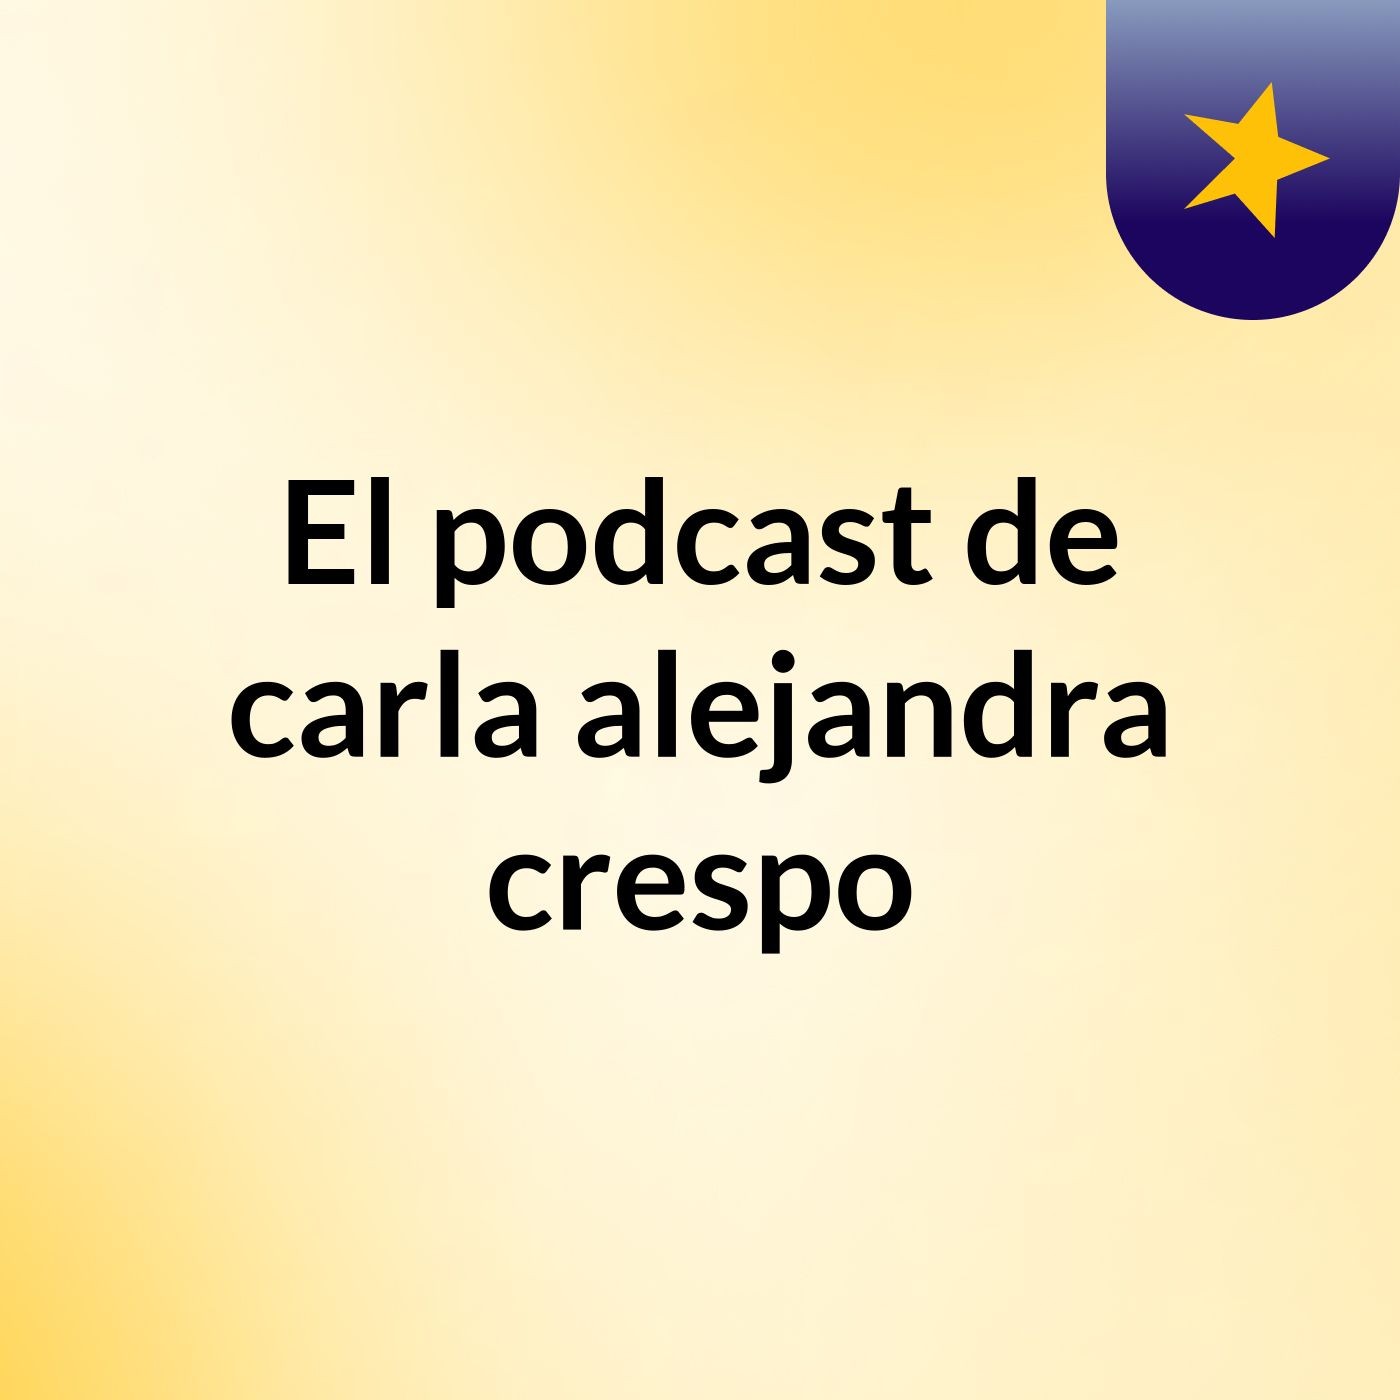 El podcast de carla alejandra crespo